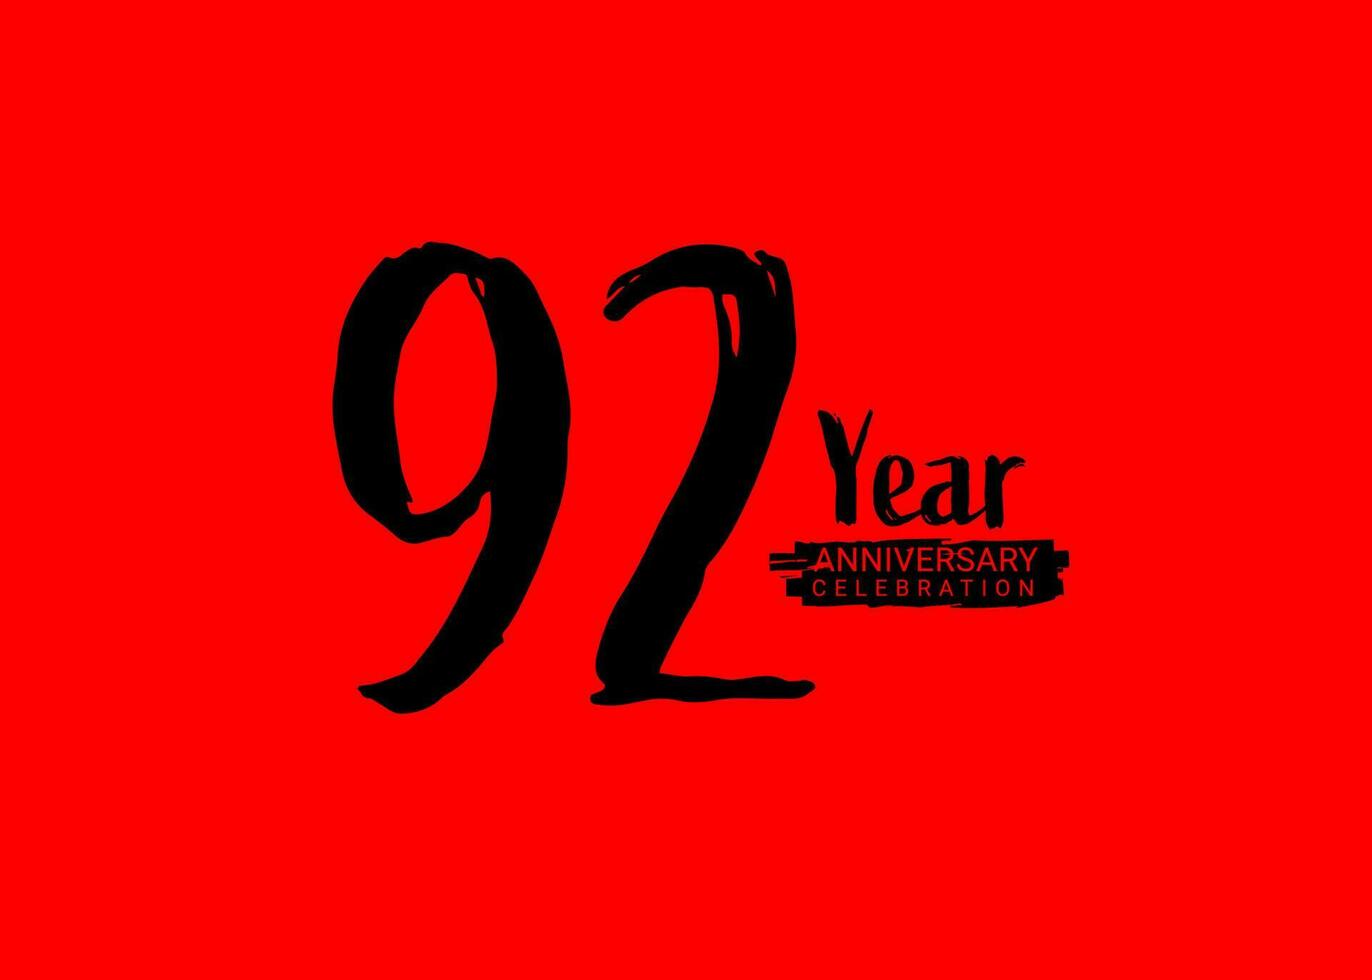 92 jaren verjaardag viering logo Aan rood achtergrond, 92 aantal logo ontwerp, 92e verjaardag logo, logotype verjaardag, vector verjaardag voor viering, poster, uitnodiging kaart